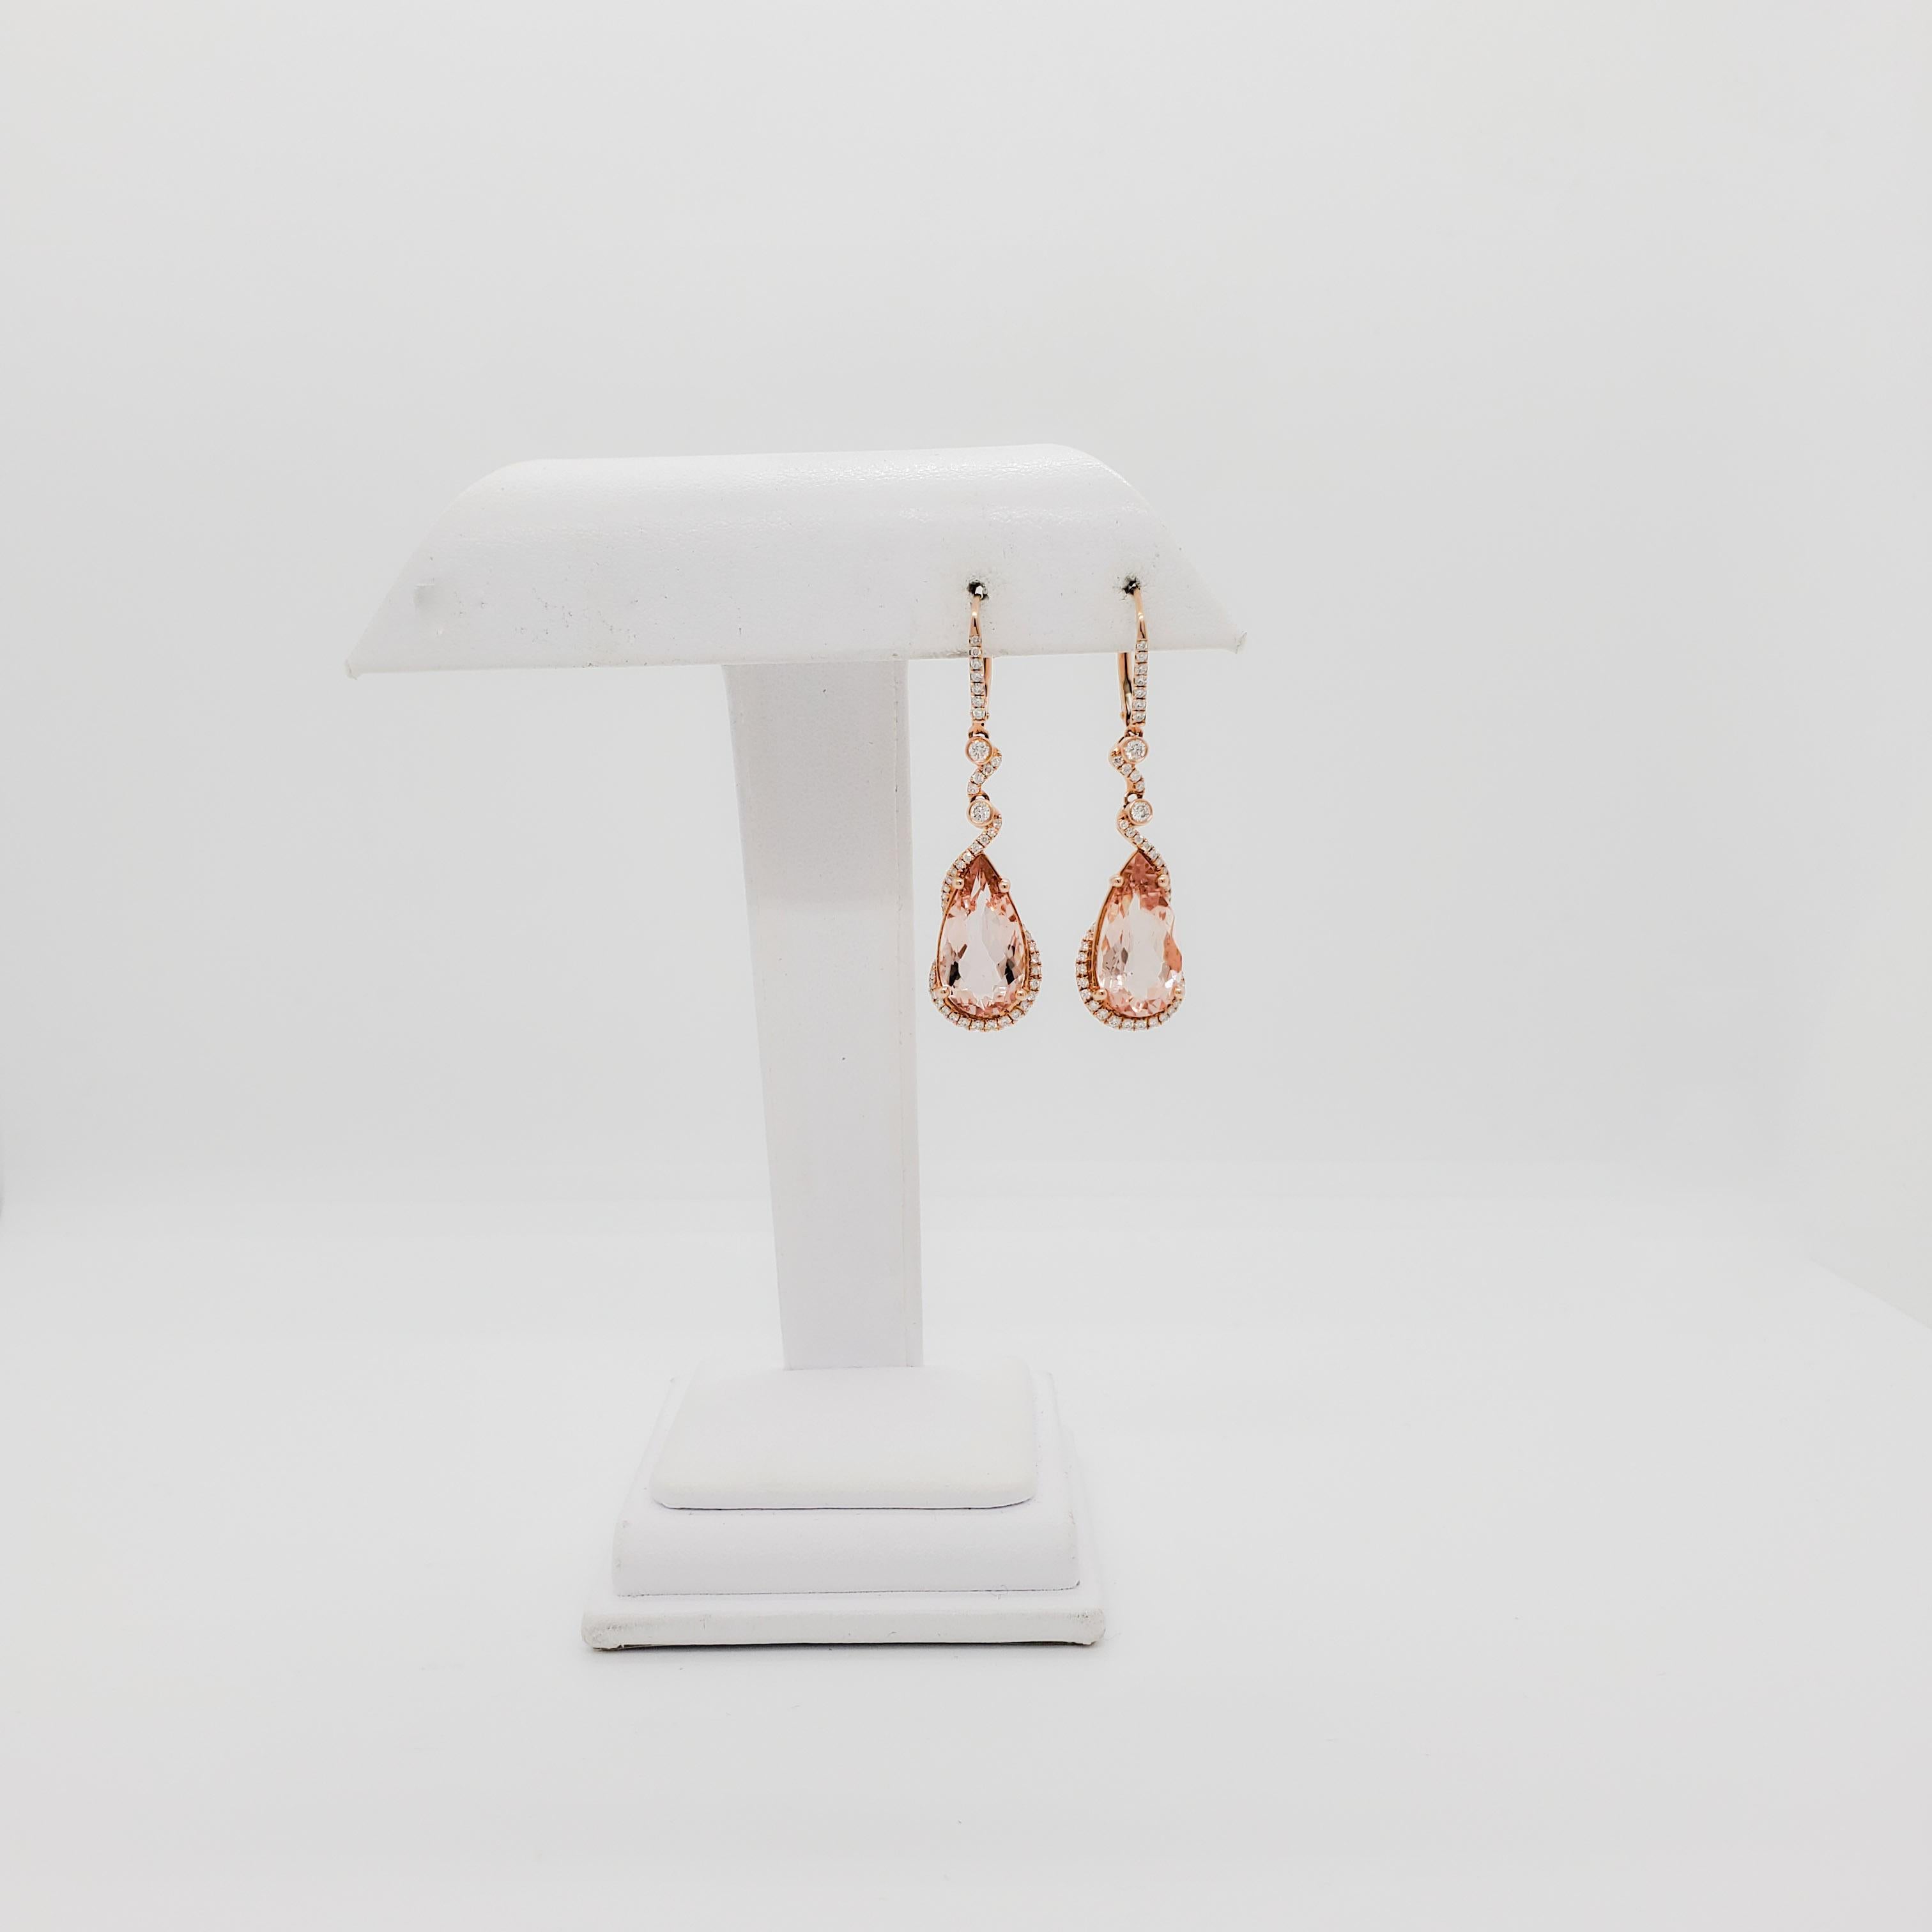 Morganite and Diamond Dangle Earrings in 14k Rose Gold 2